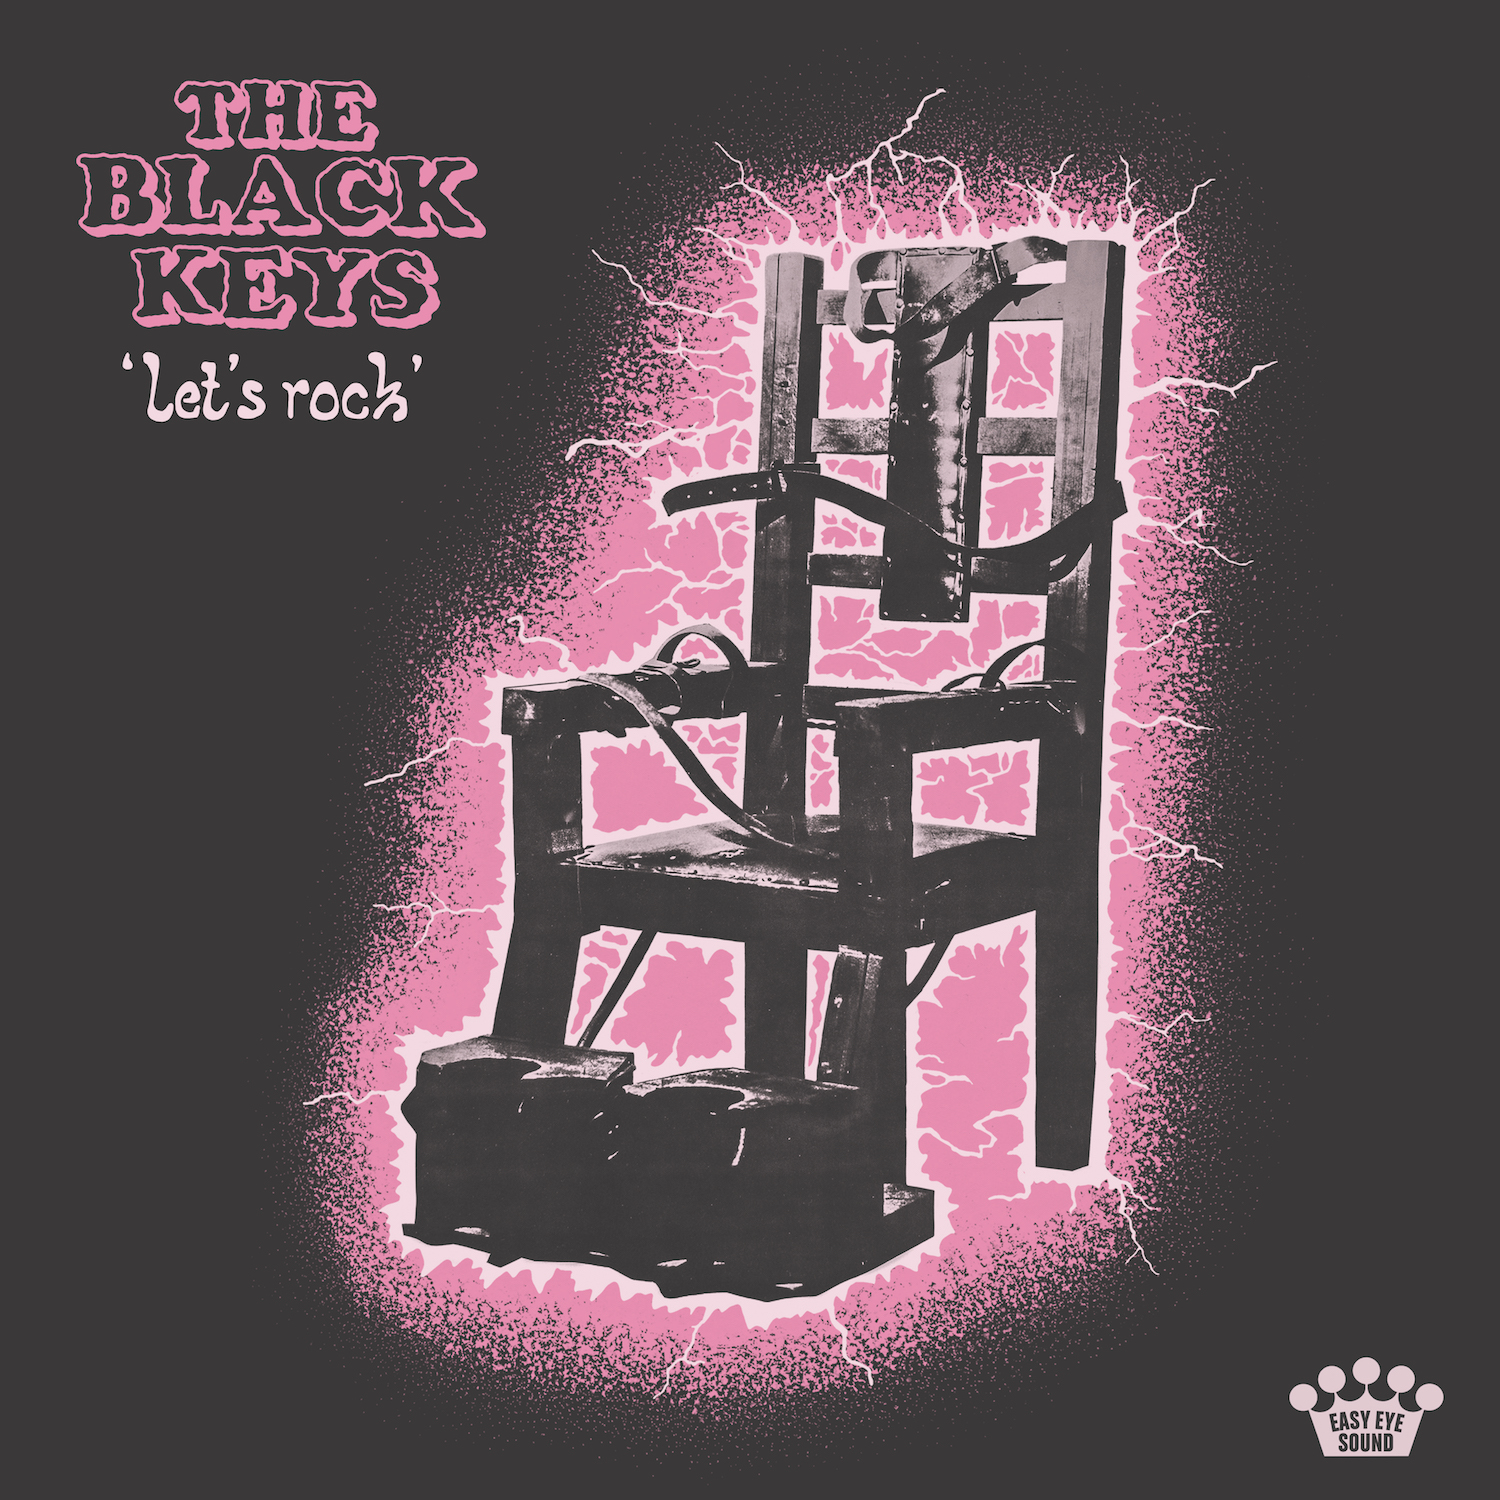 the-black-keys-lets-rock-album-cover-artwork-1.jpg